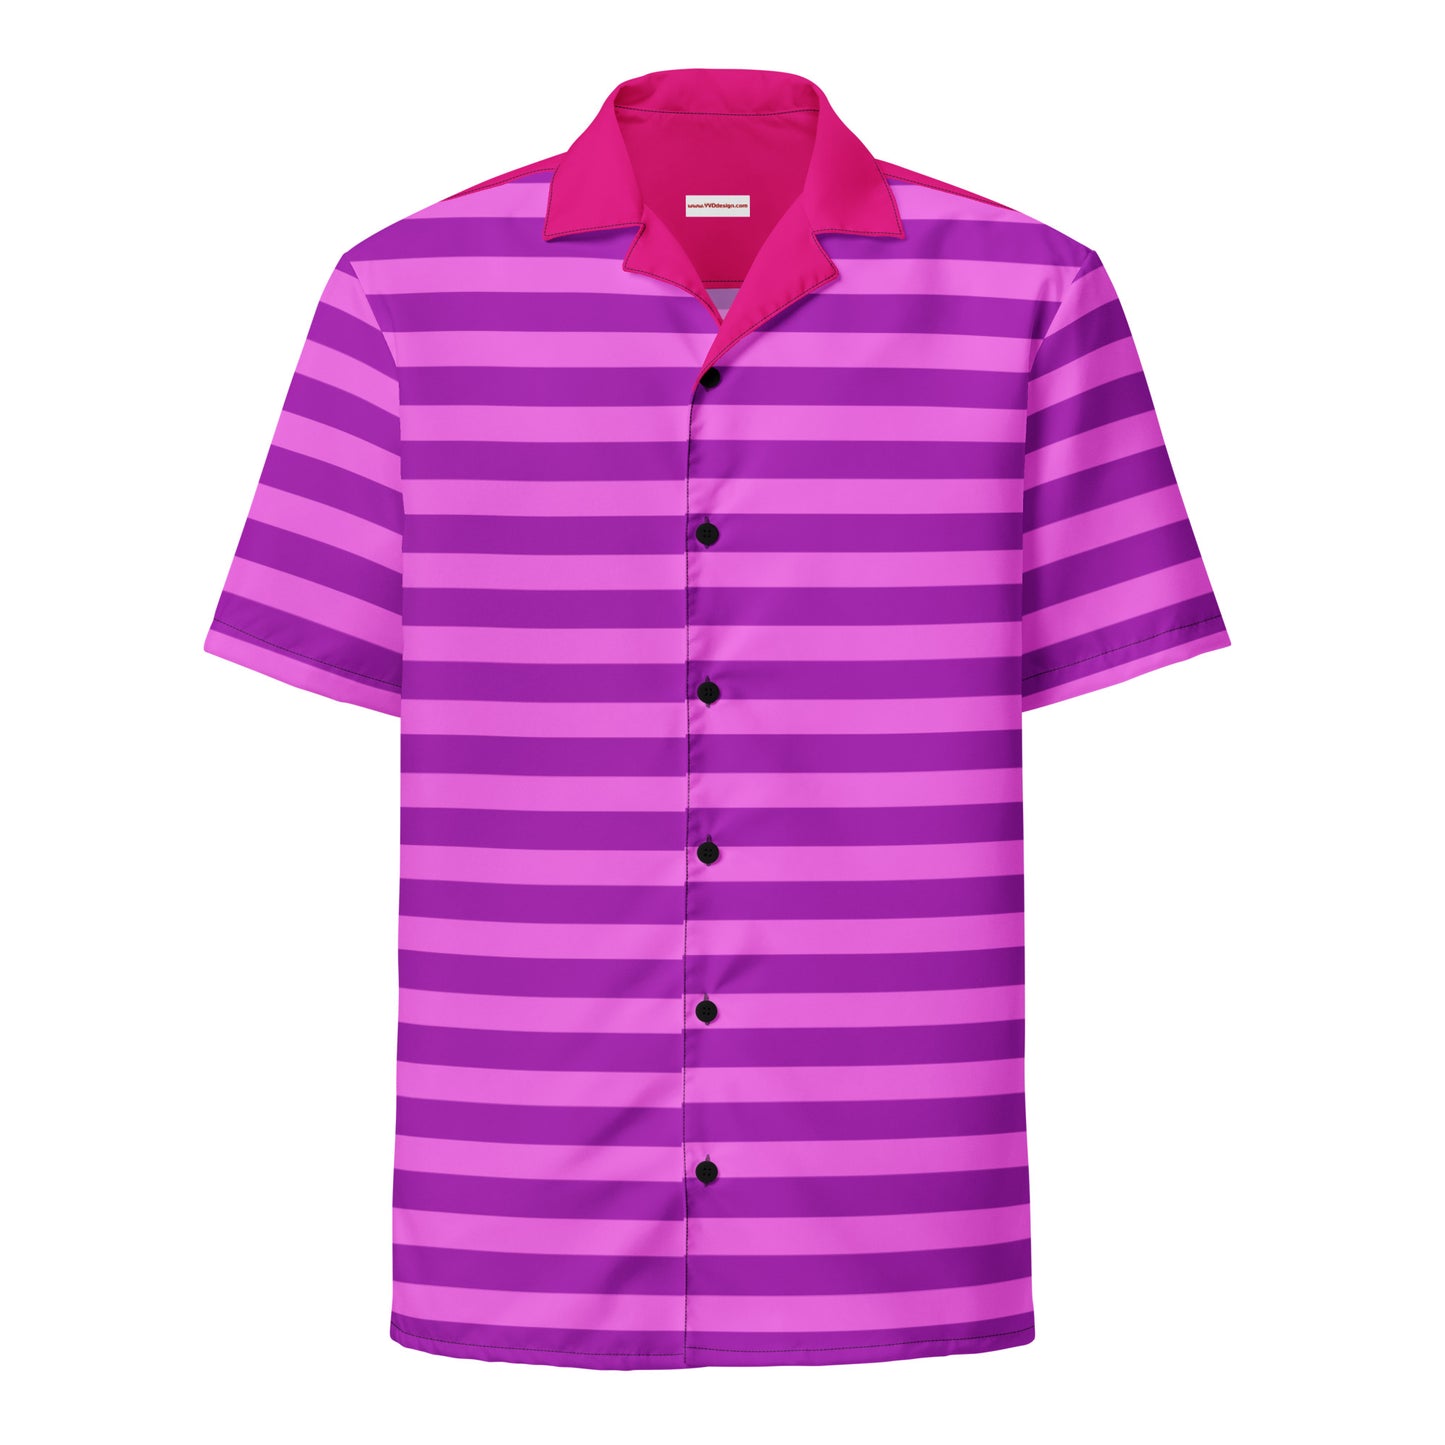 Conjunto de camisa a rayas rosa/camisa de manga corta con botones